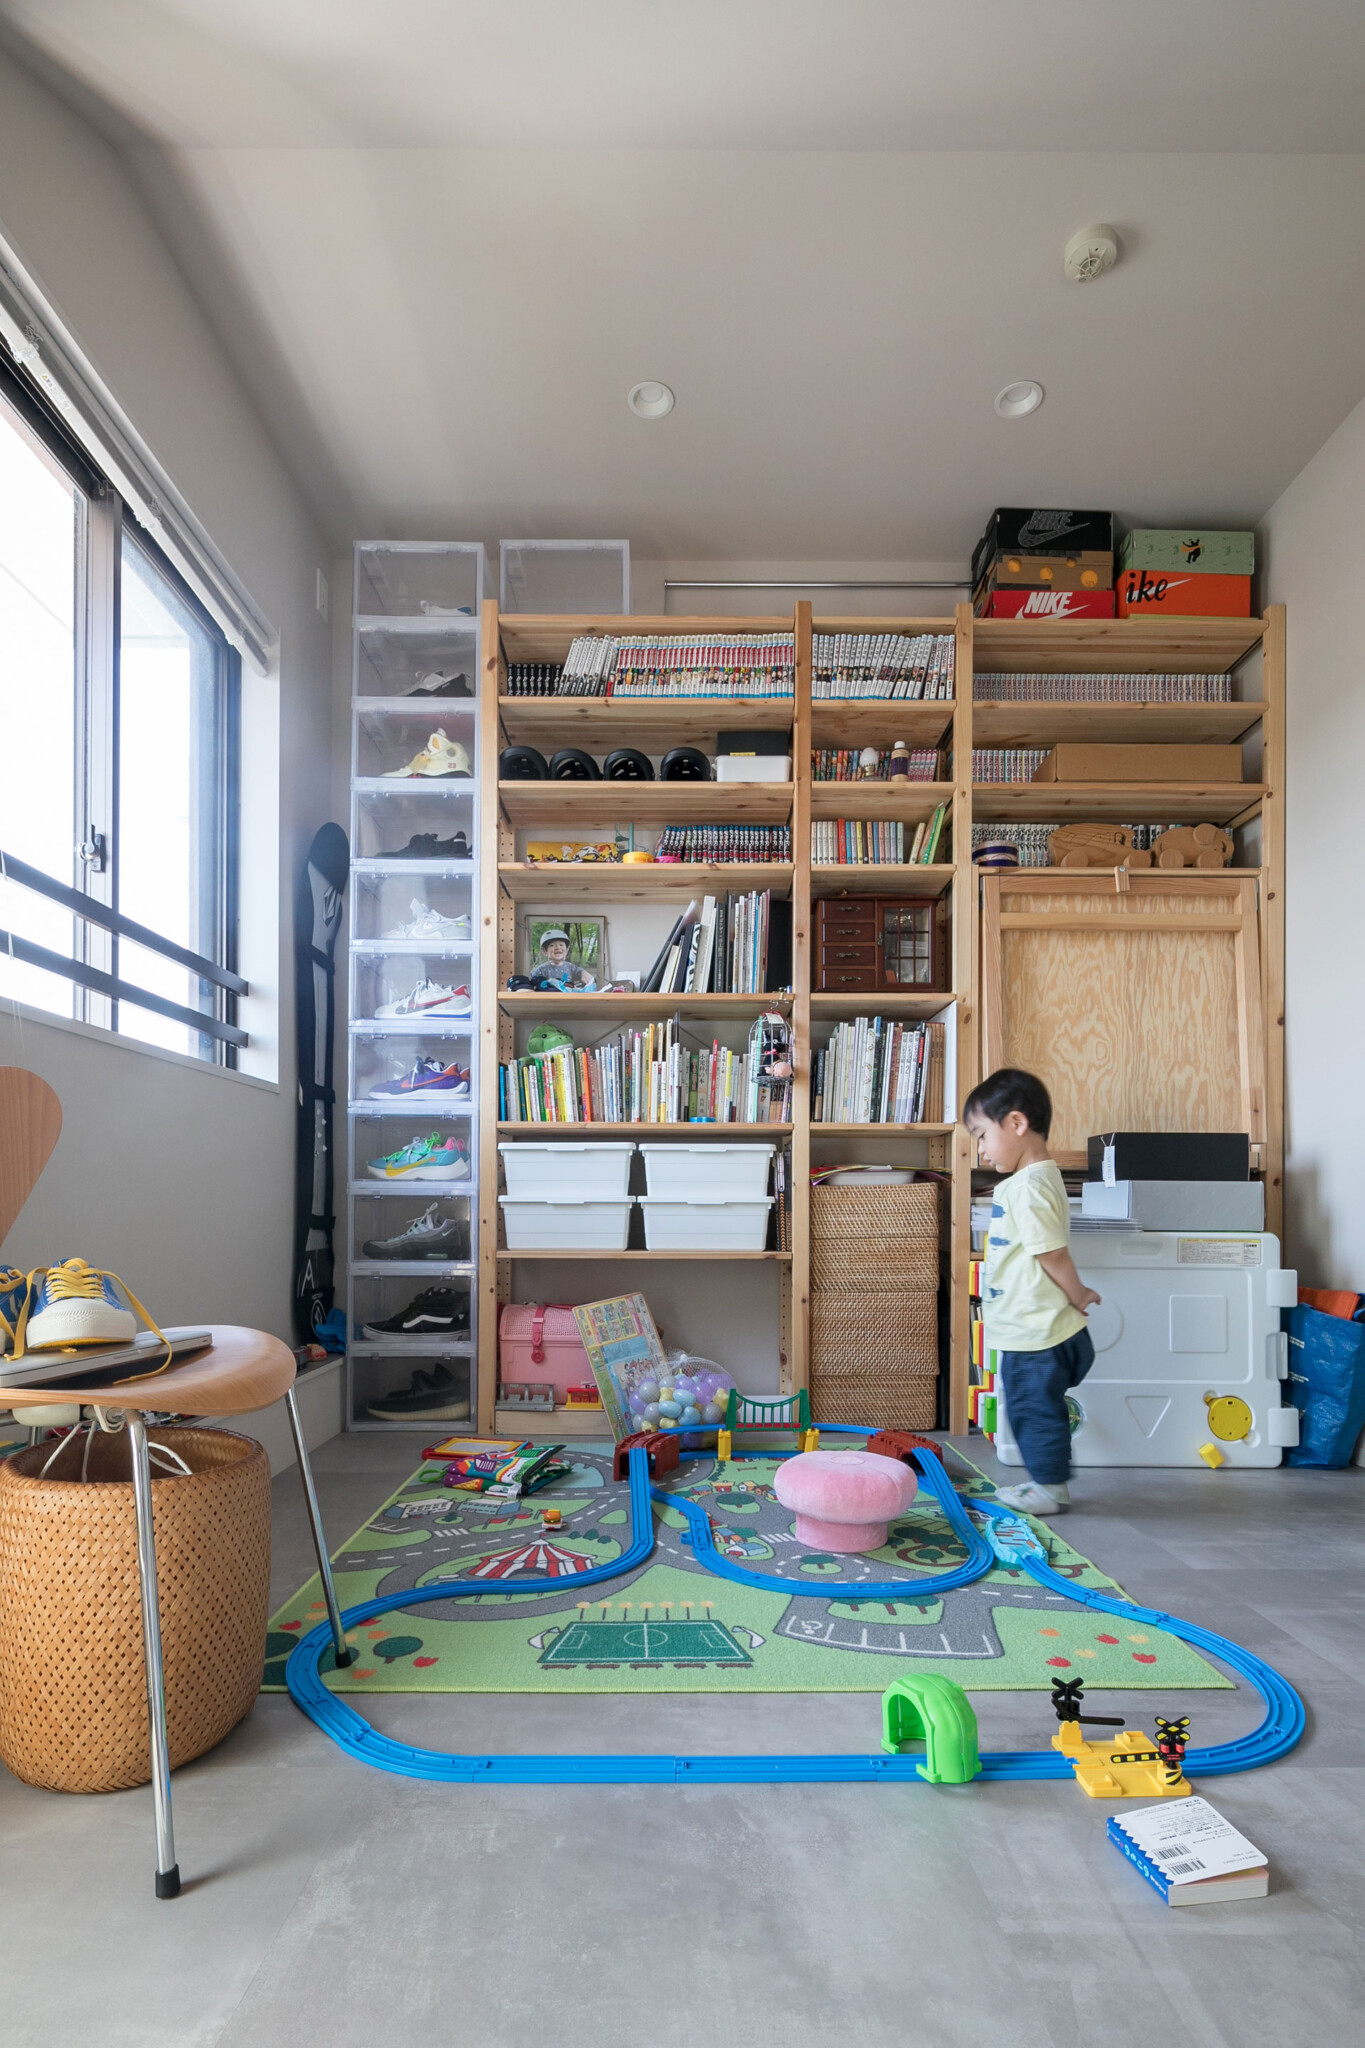 現在はフリースペースとして使っているロフトは将来的には子ども部屋として活用することを想定している。